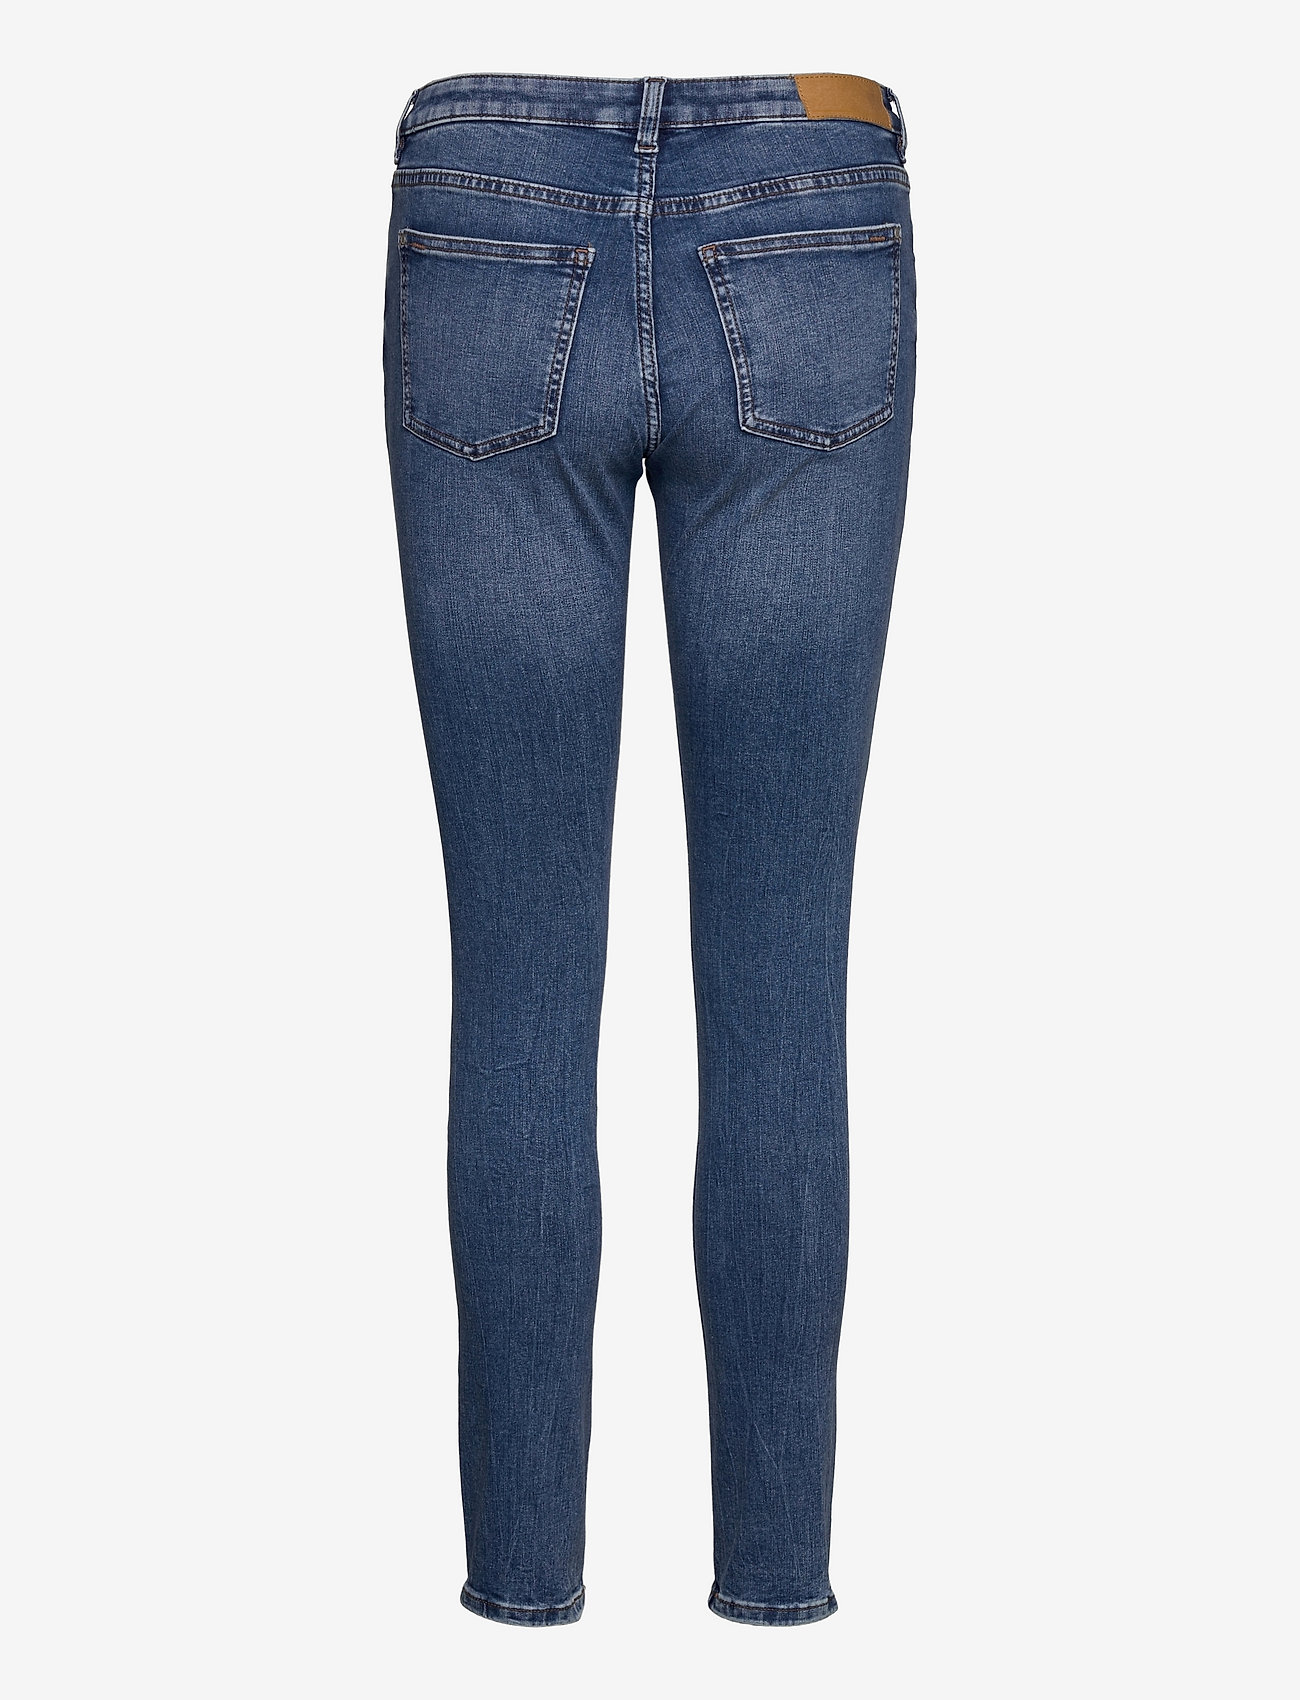 Tussendoortje Portiek Overtekenen EDC by Esprit Pants Denim - Skinny jeans - Boozt.com